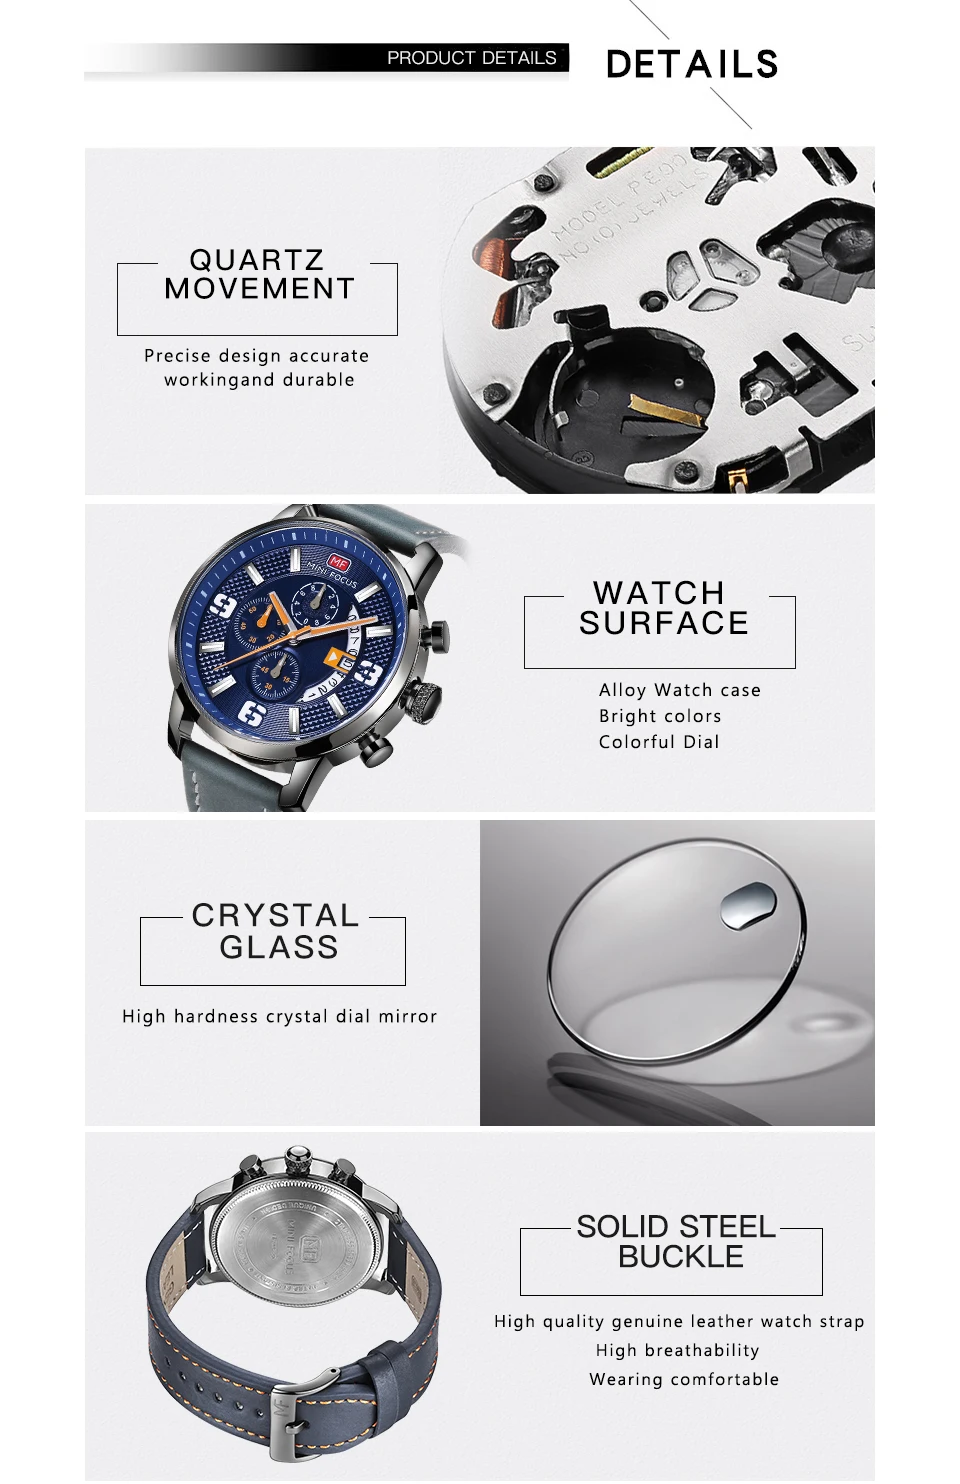 Мини фокус 2019 спортивные часы хронограф для мужчин кварцевые синий циферблат календари кожаный ремешок многофункциональные наручные часы